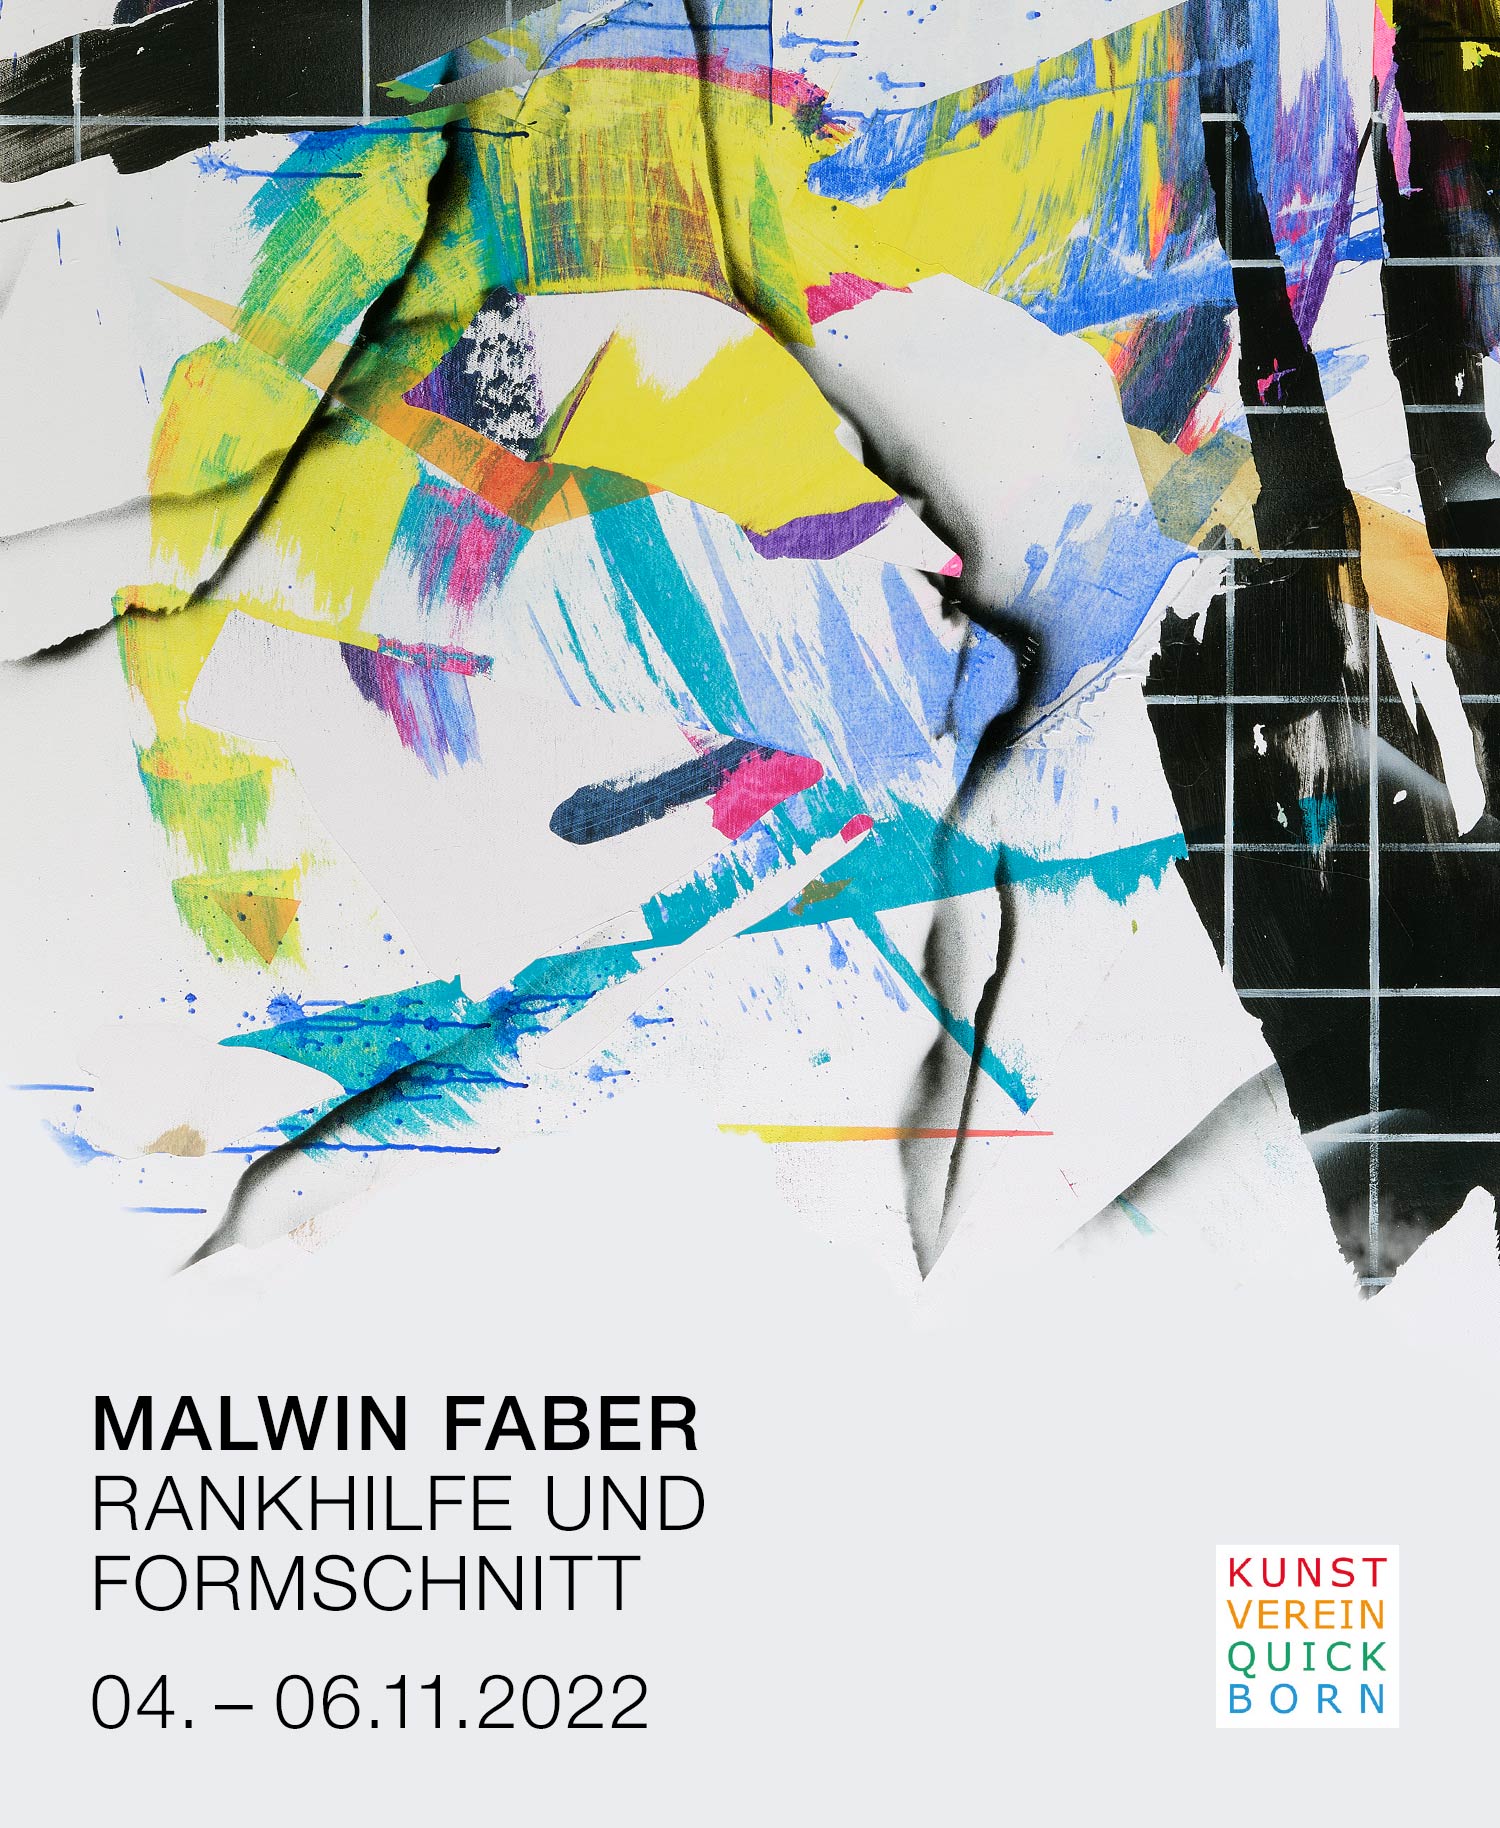 Rankhilfe und Formschnitt. Malwin Faber, Kunstverein Quickborn